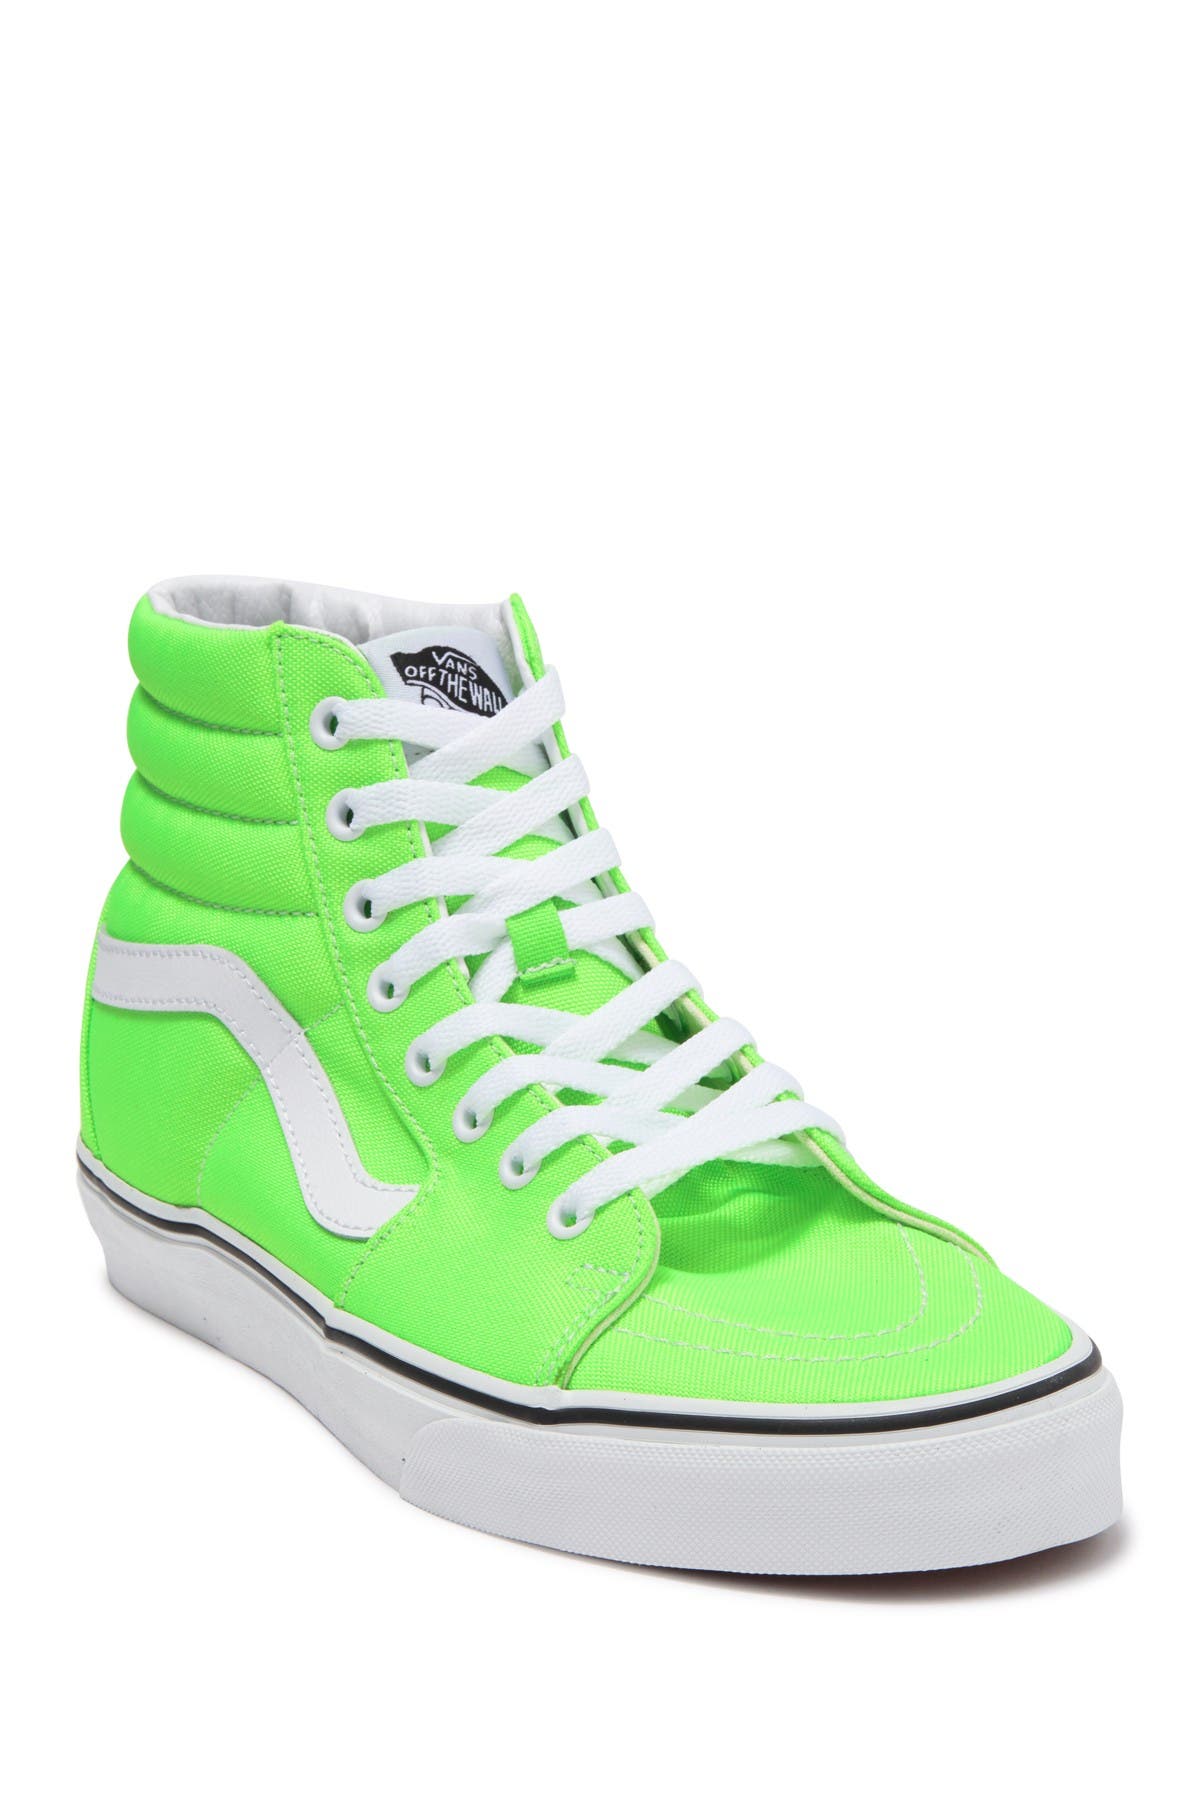 Vans Sk8-hi Top Sneaker In Neon Green 